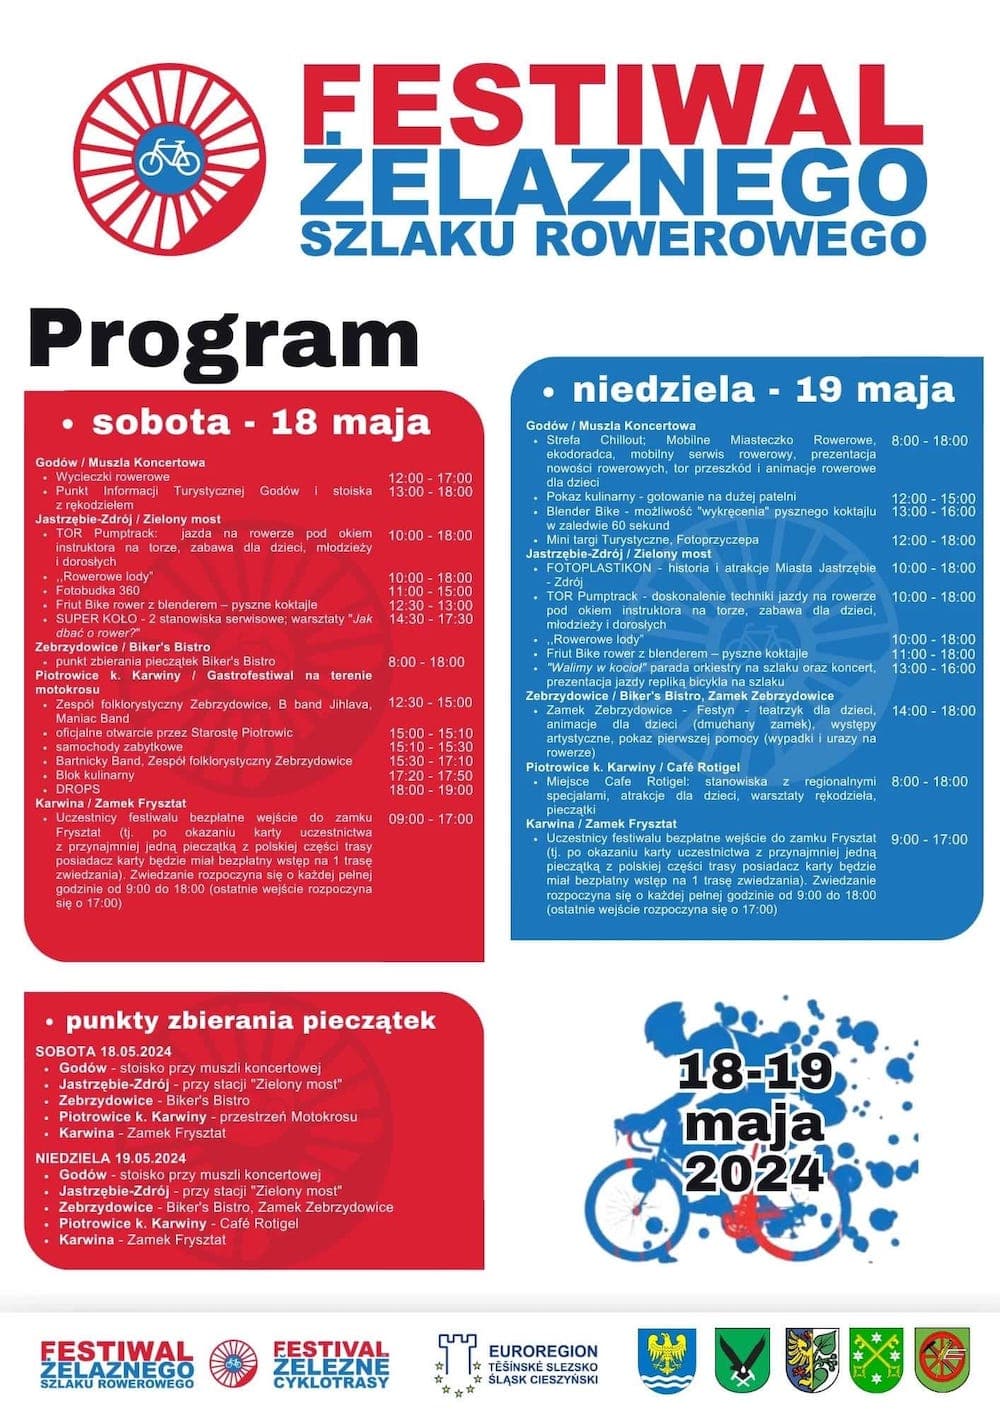 Festiwal Żelaznego Szlaku Rowerowego 2024